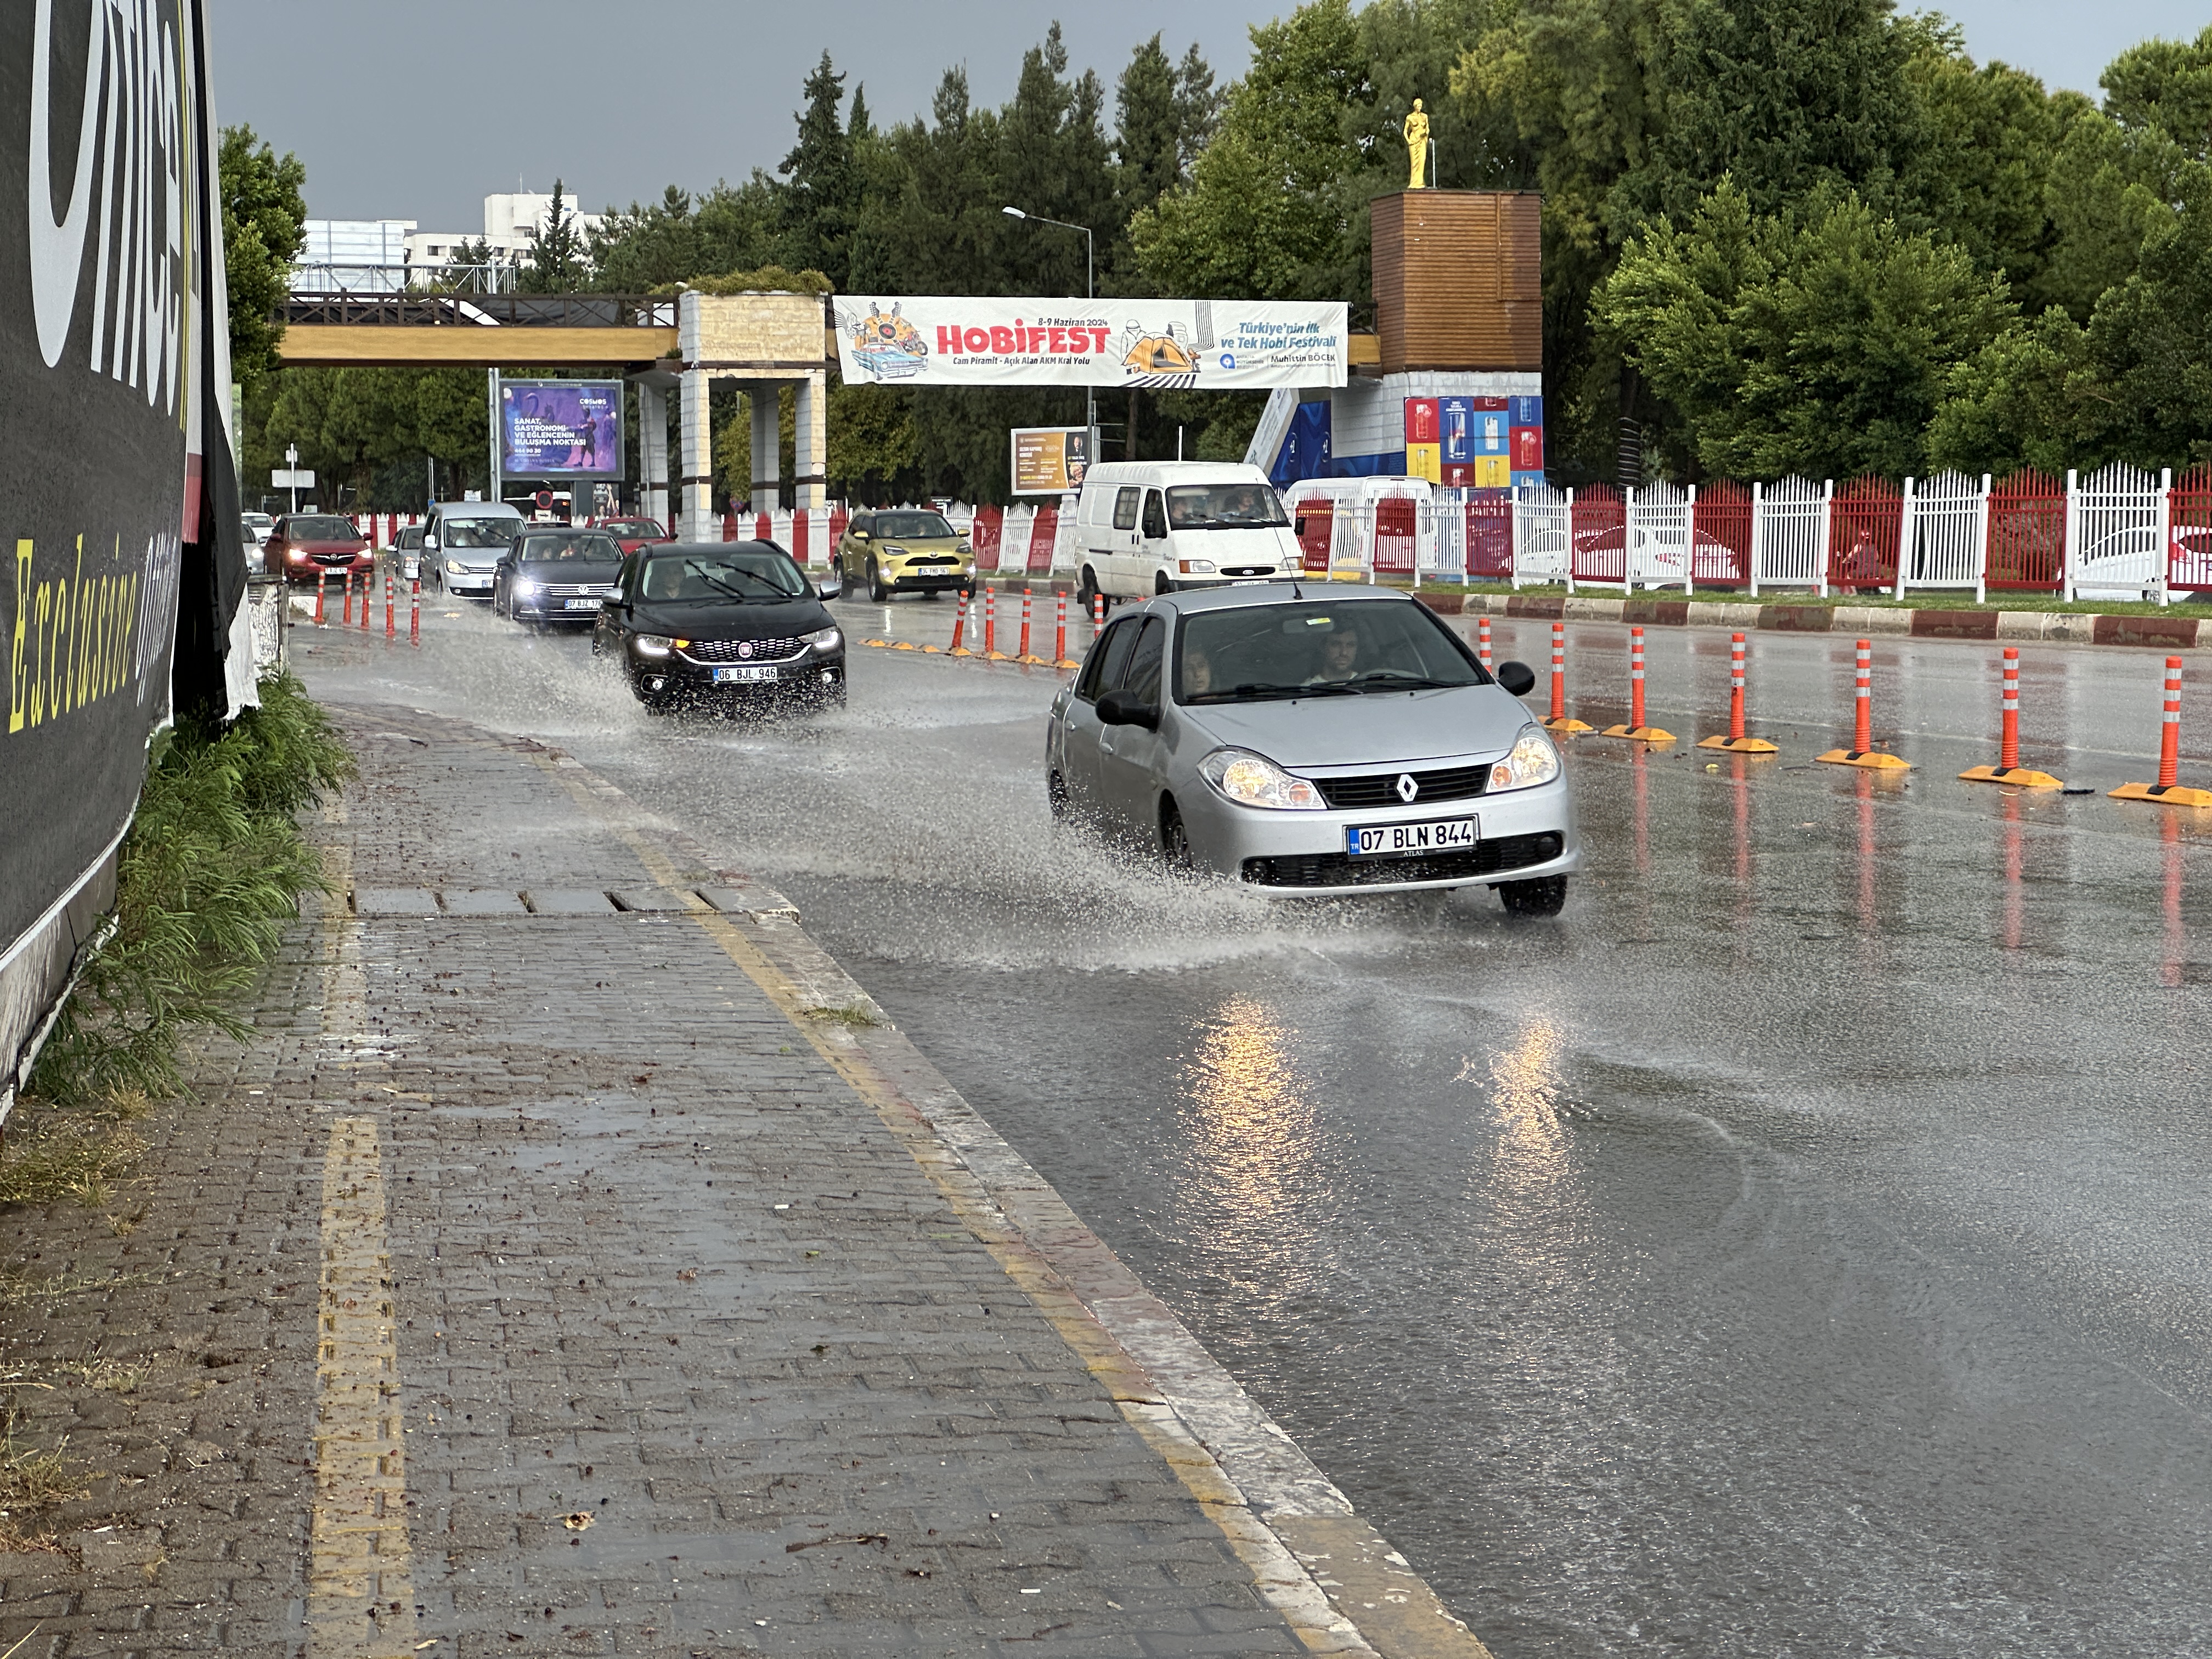 Antalya'da yağış ve fırtına etkili oldu